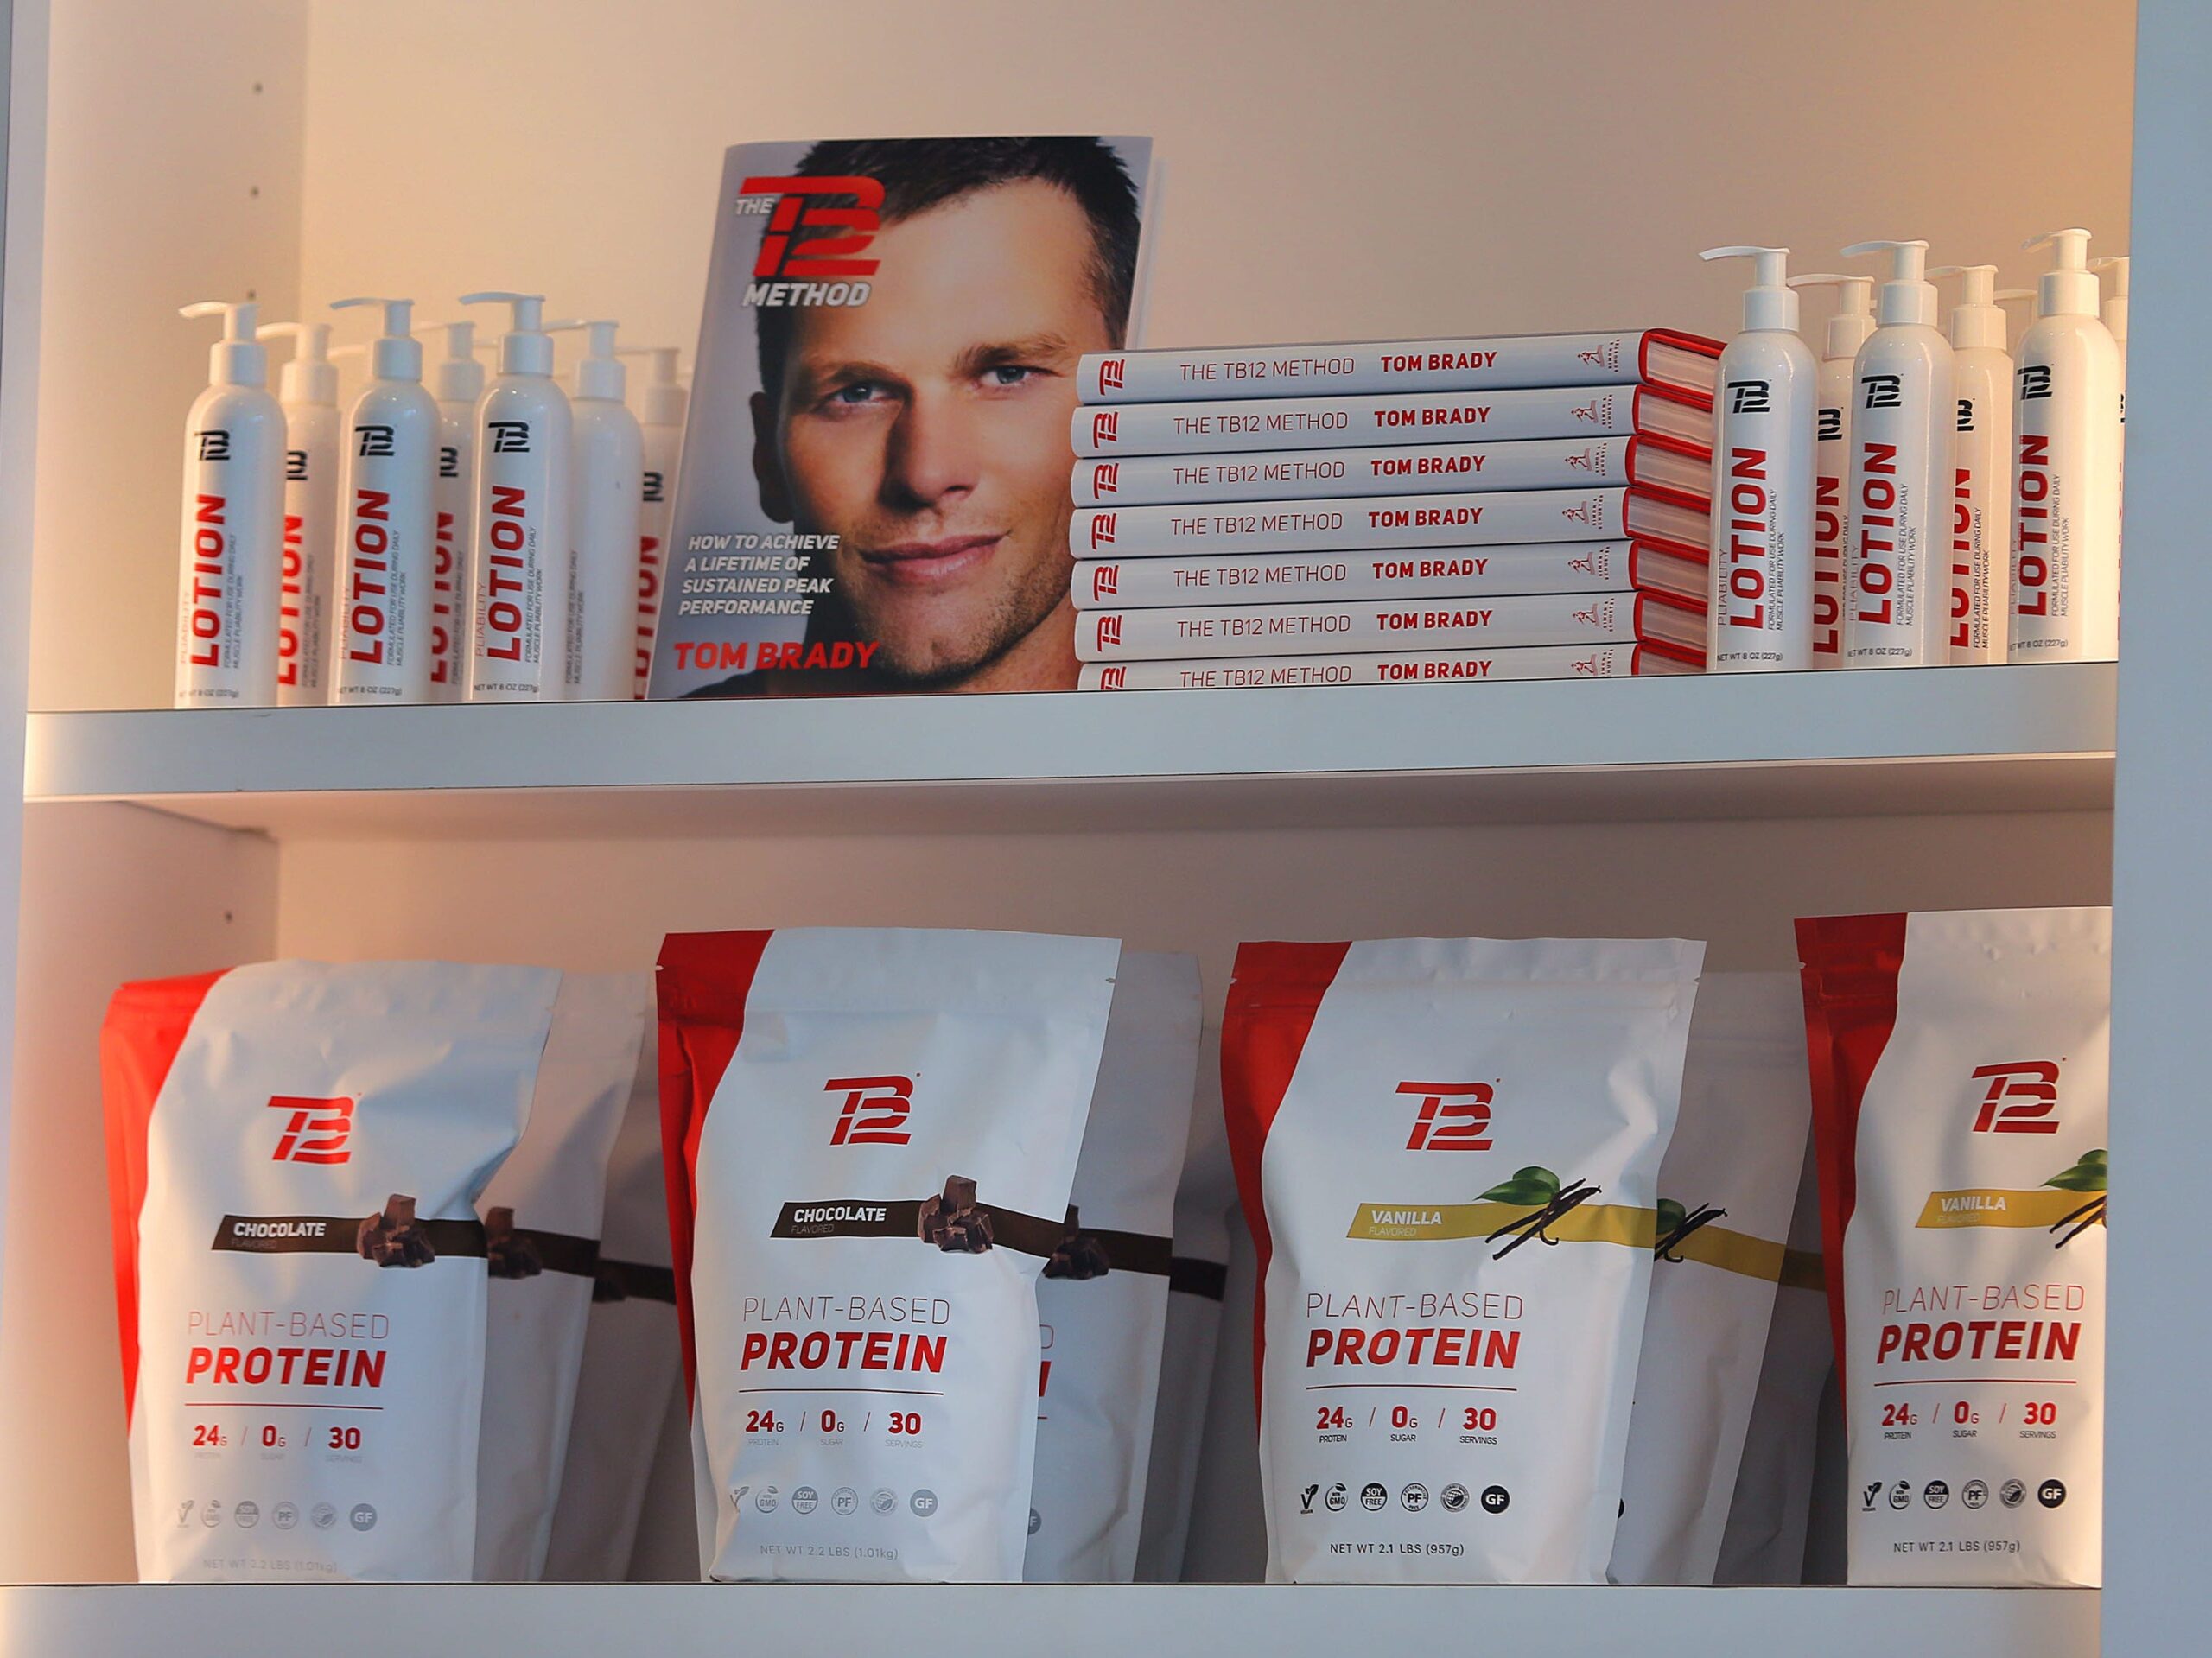 TB12 merchandise on a shelf accompanied by a photo of Tom Brady.